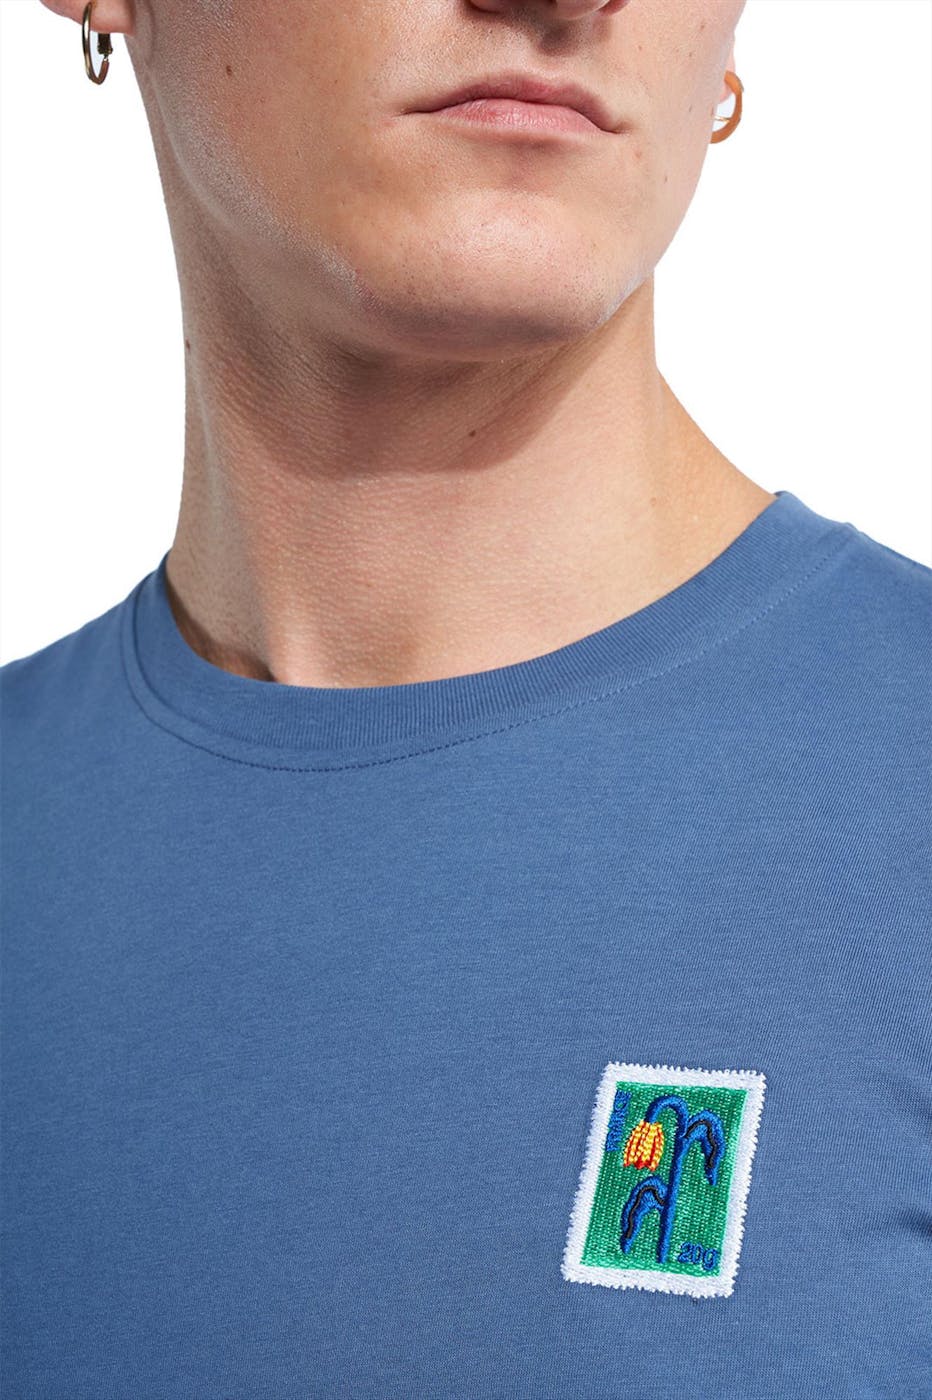 OLOW - Blauwe Tulip T-shirt